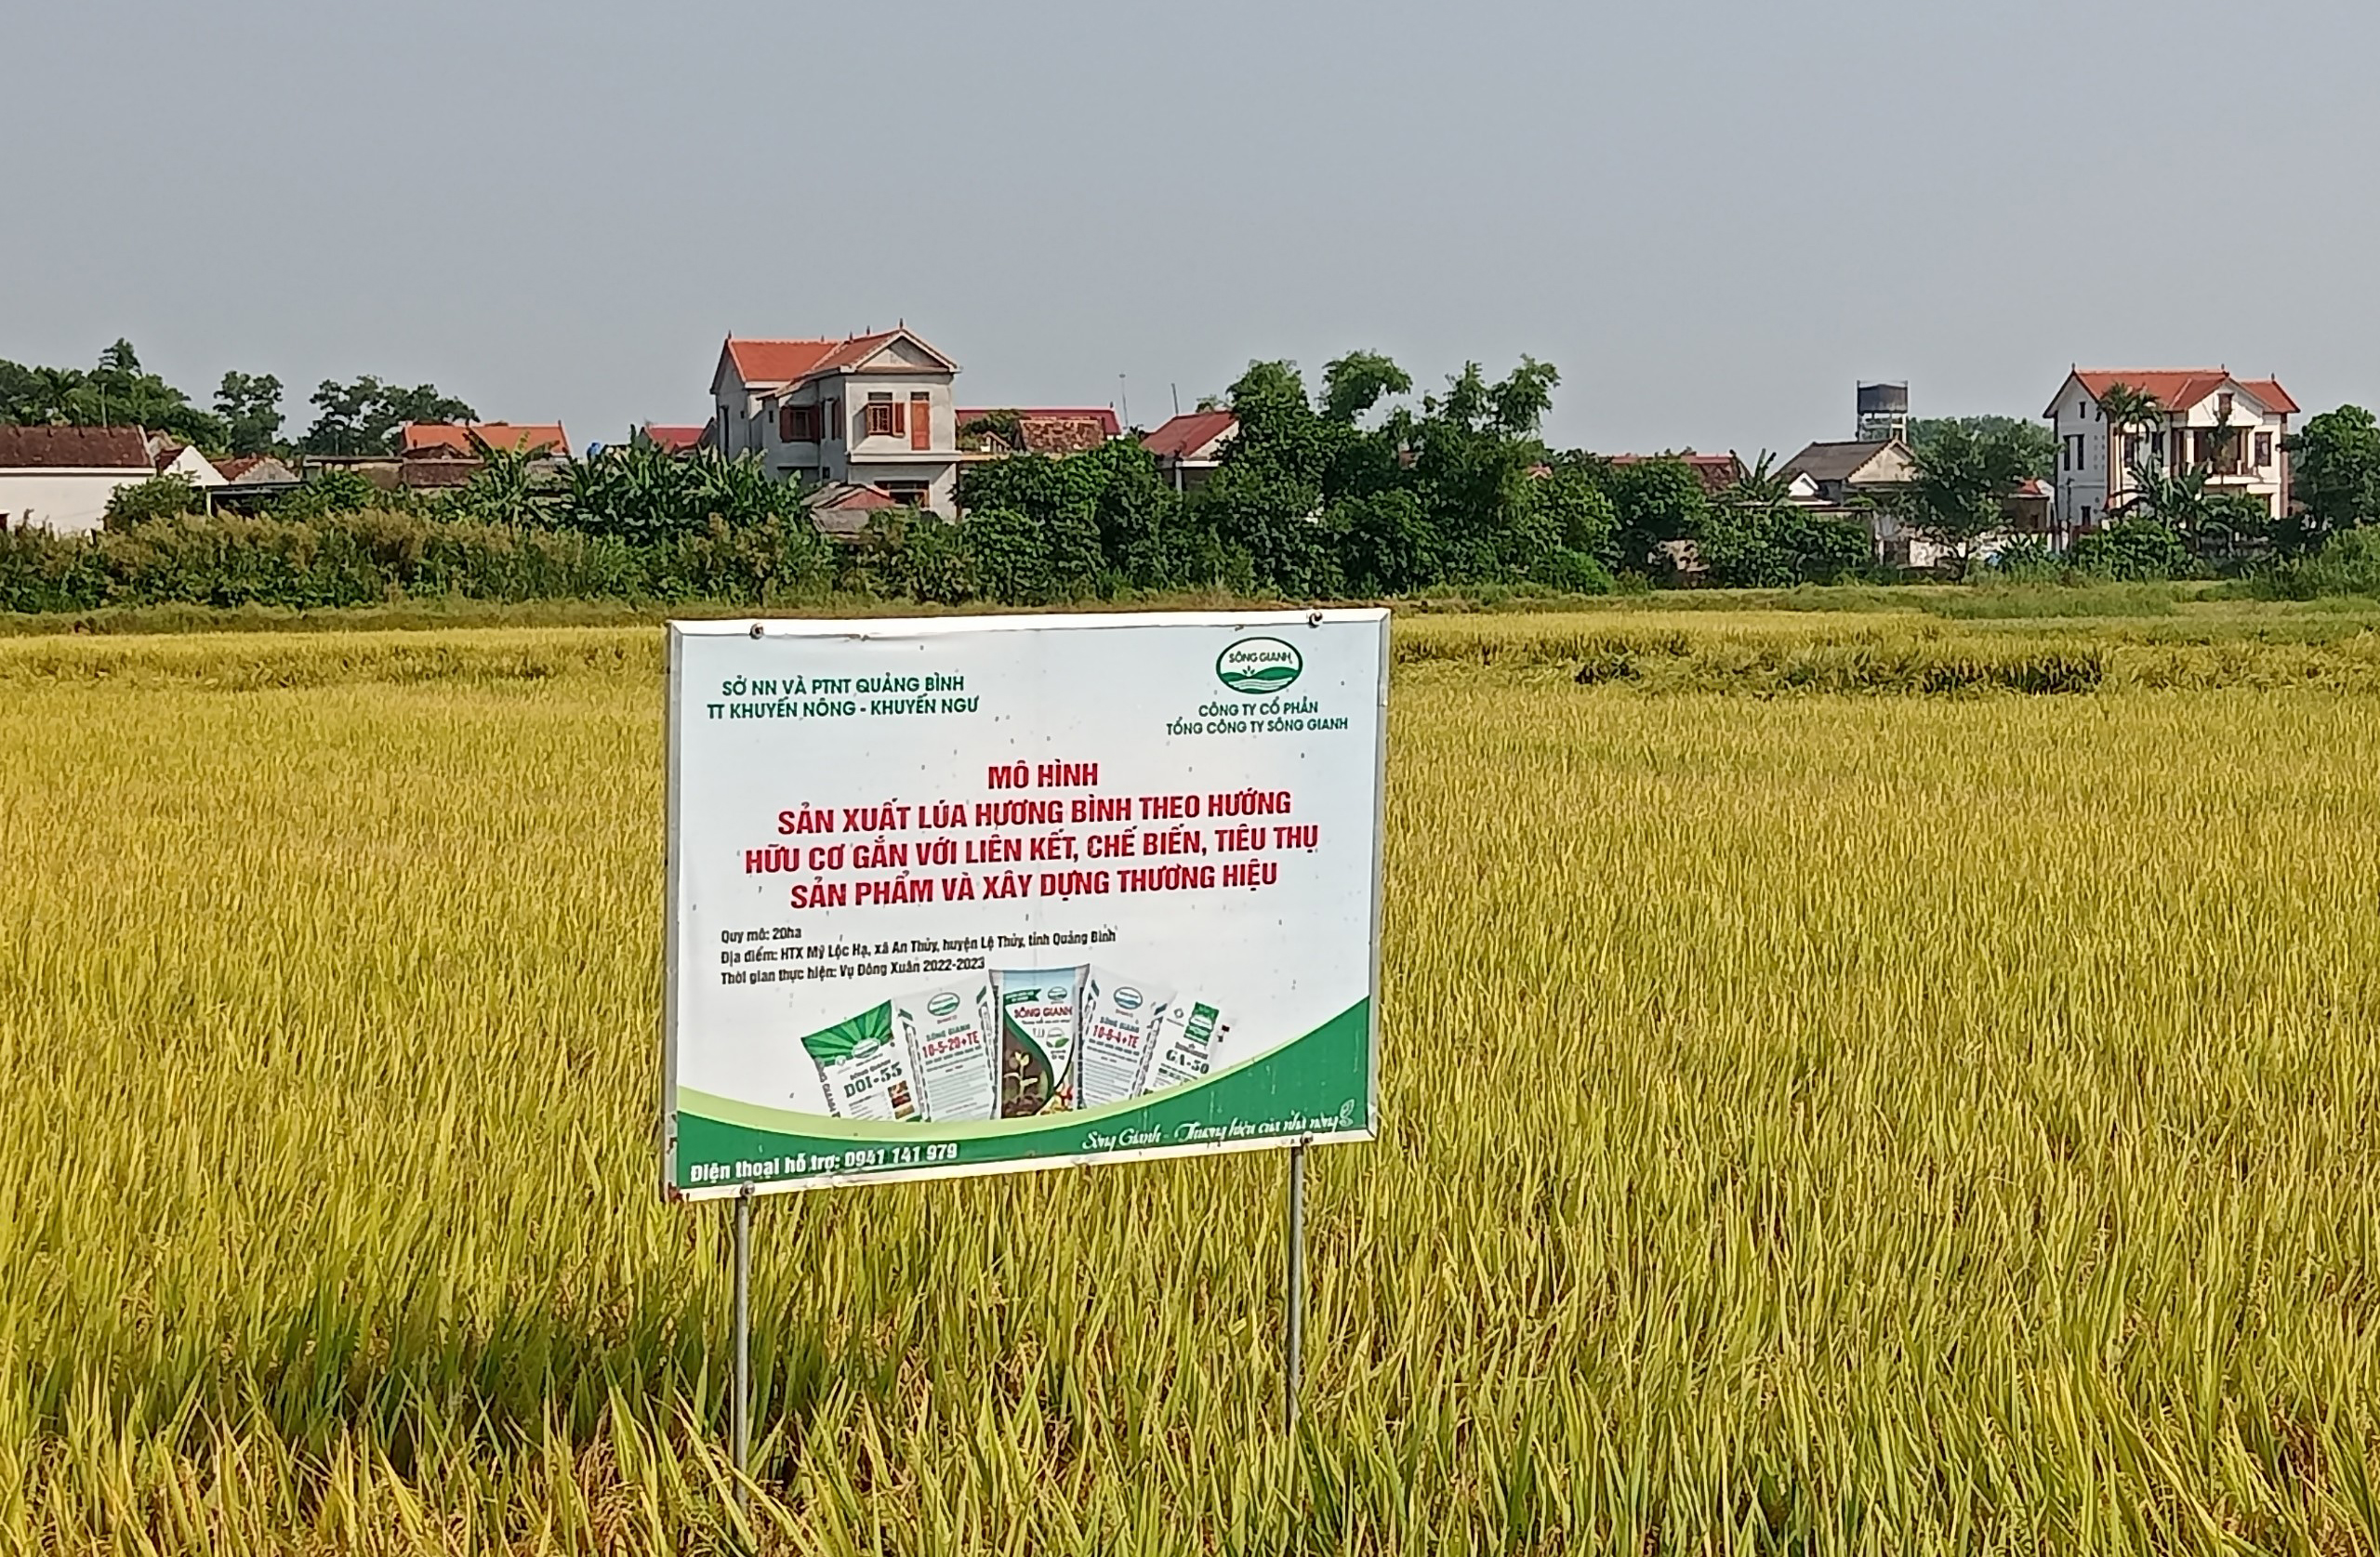 Sản xuất lúa theo hướng hữu cơ gắn với liên kết tiêu thụ sản phẩm